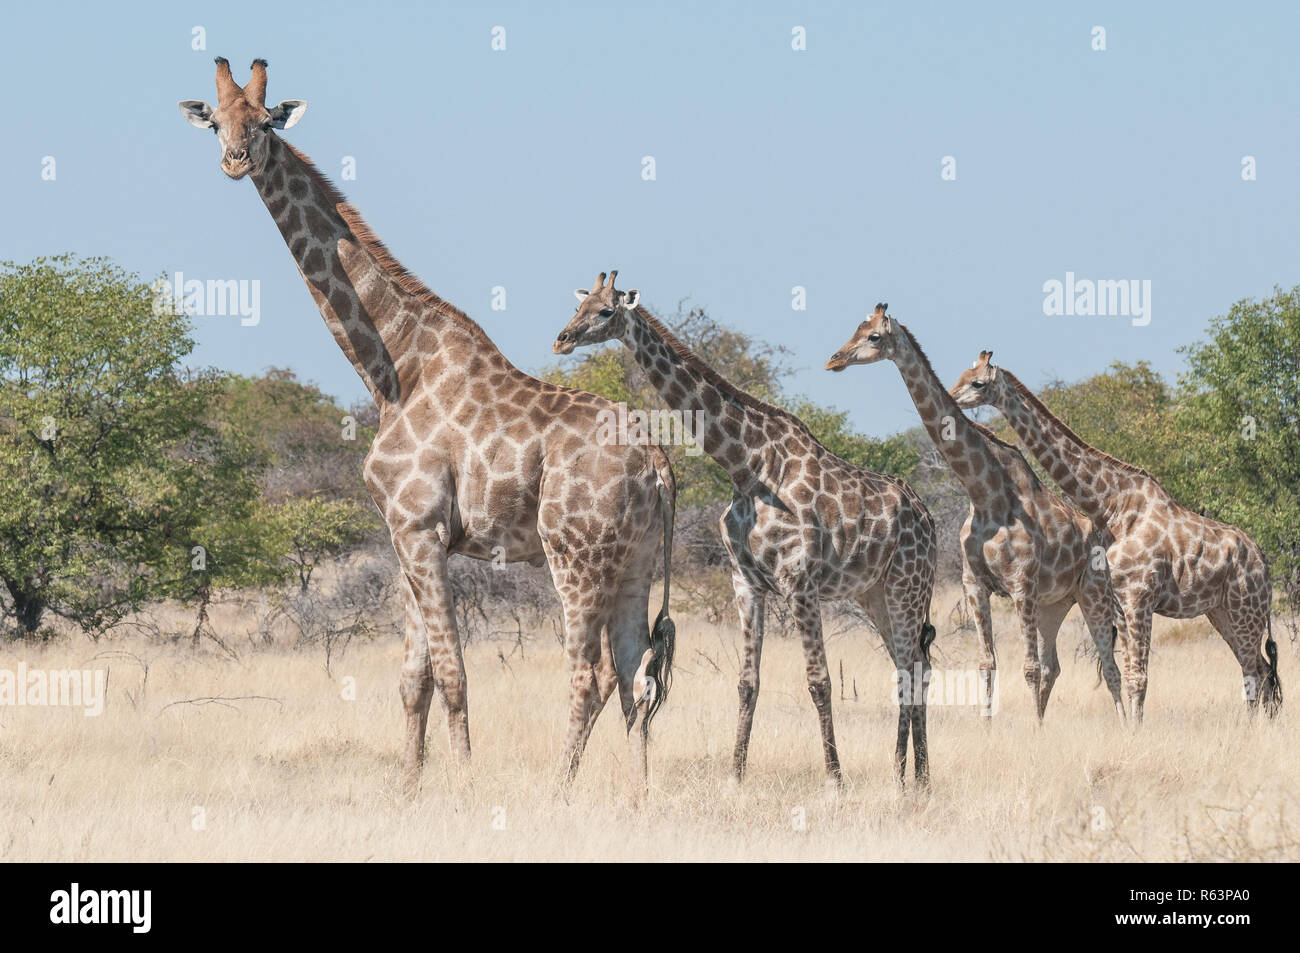 Four giraffes Stock Photo